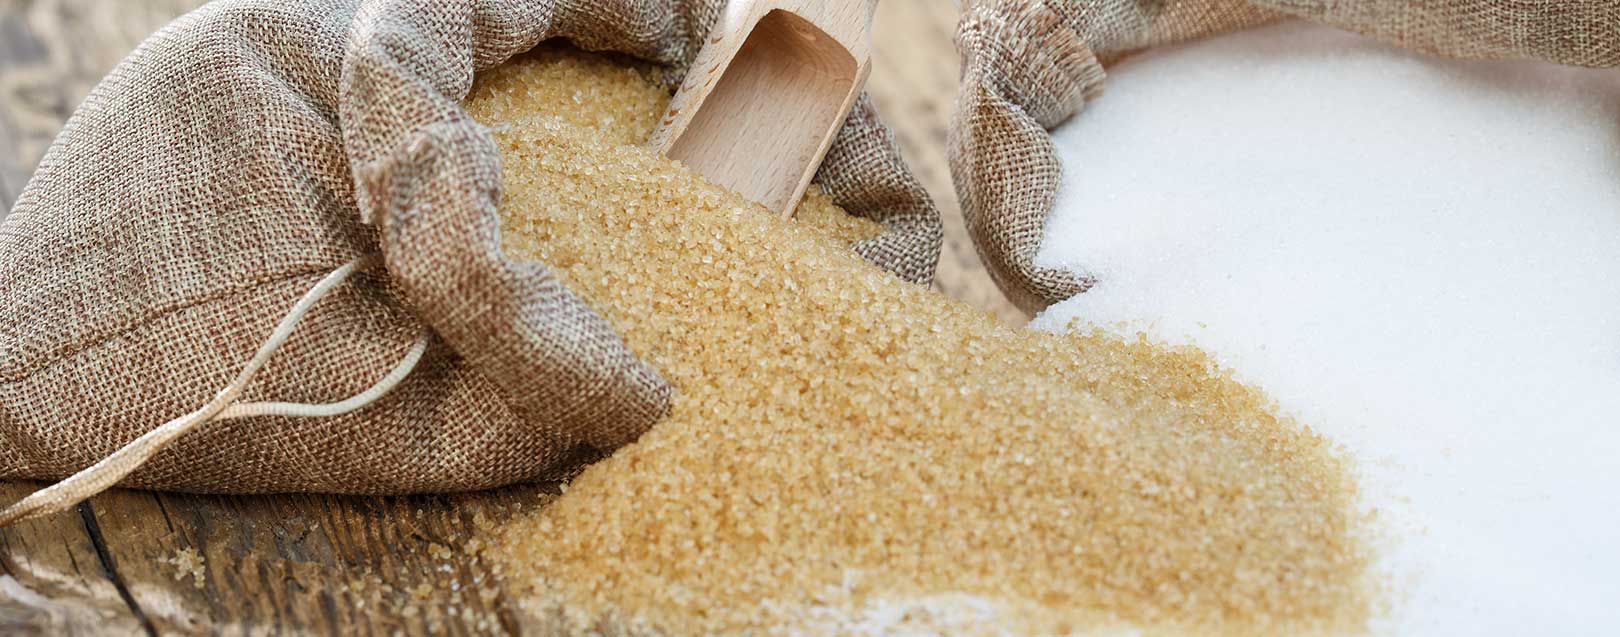 Sugar industry asks for lower duty on sugar in Sri Lanka, Bangladesh